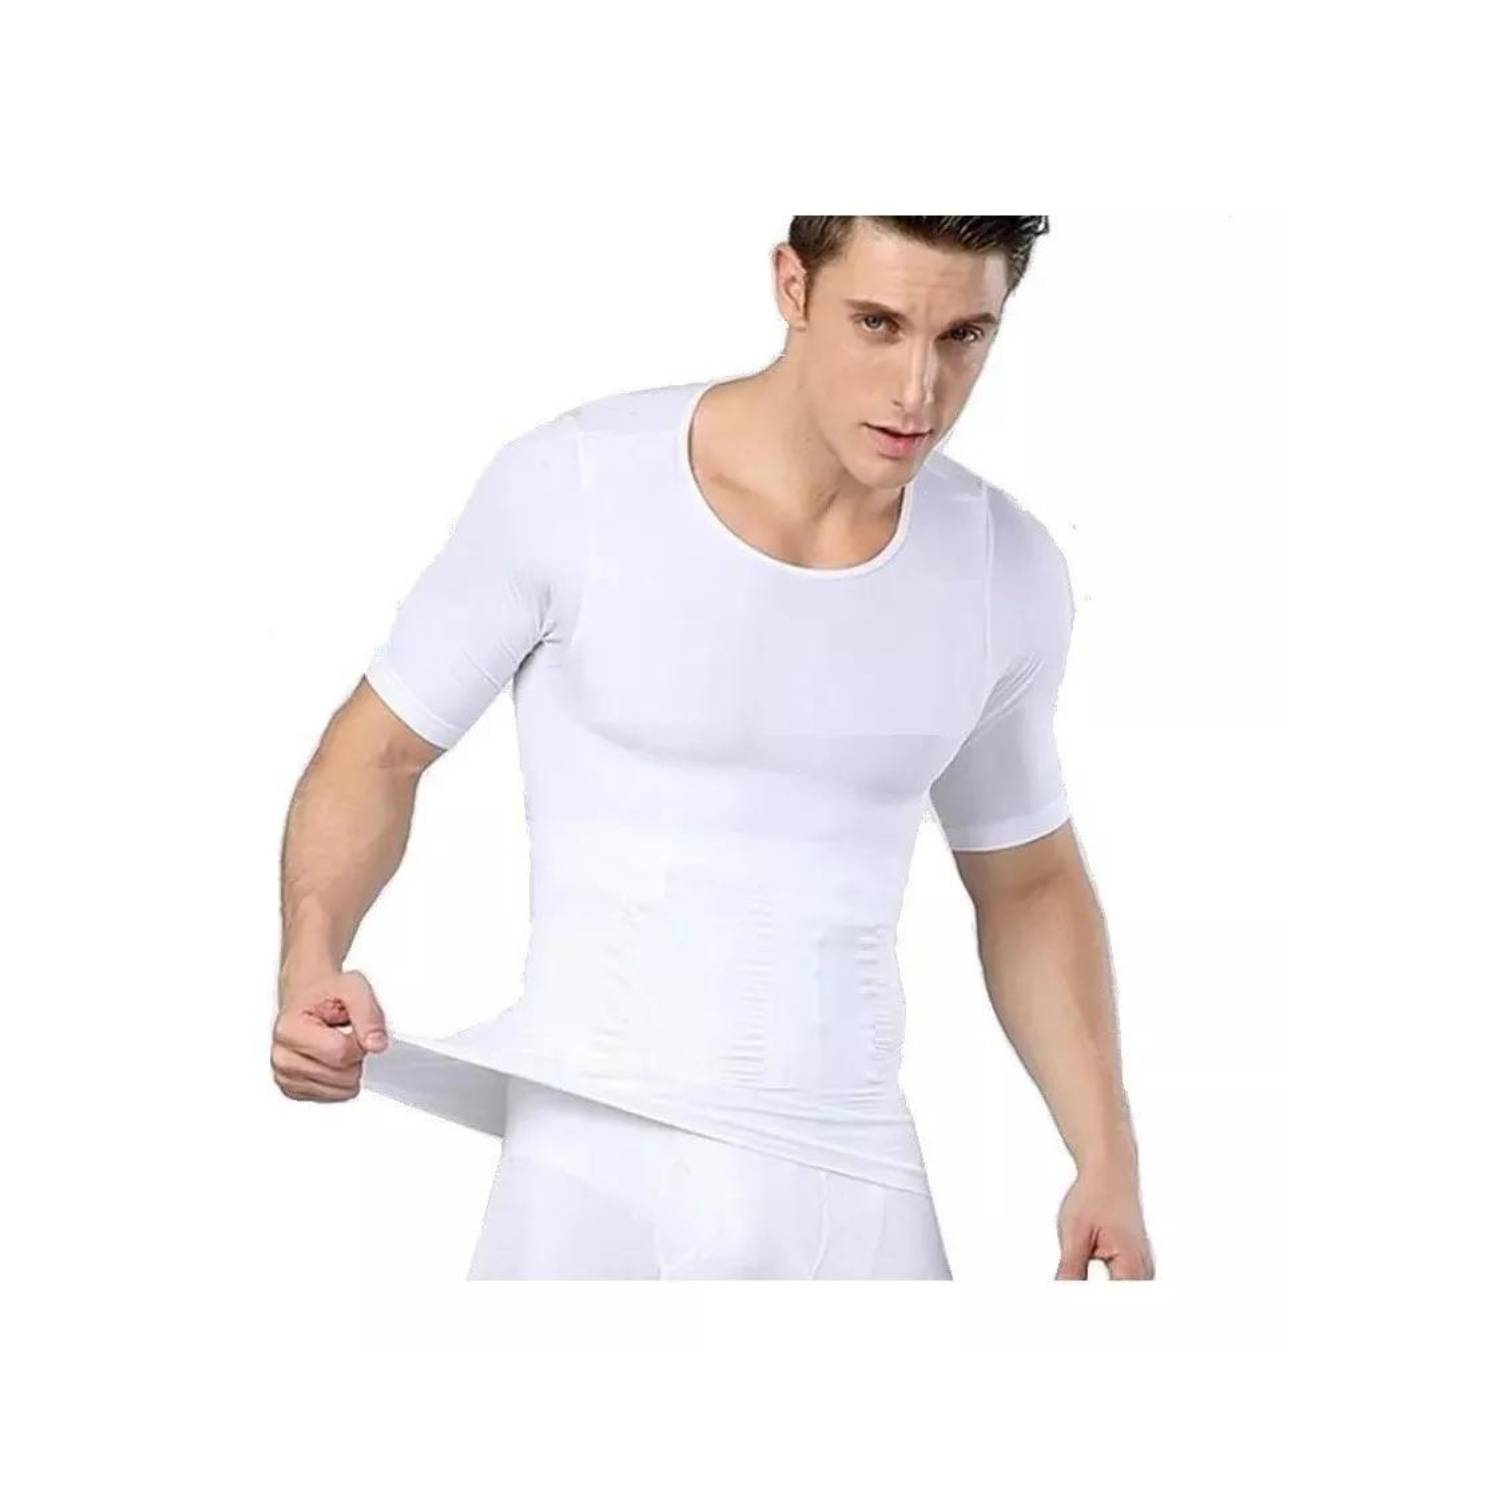 LIKE SHOP Polera Compresión Hombre Faja Camiseta Reductora Hombre